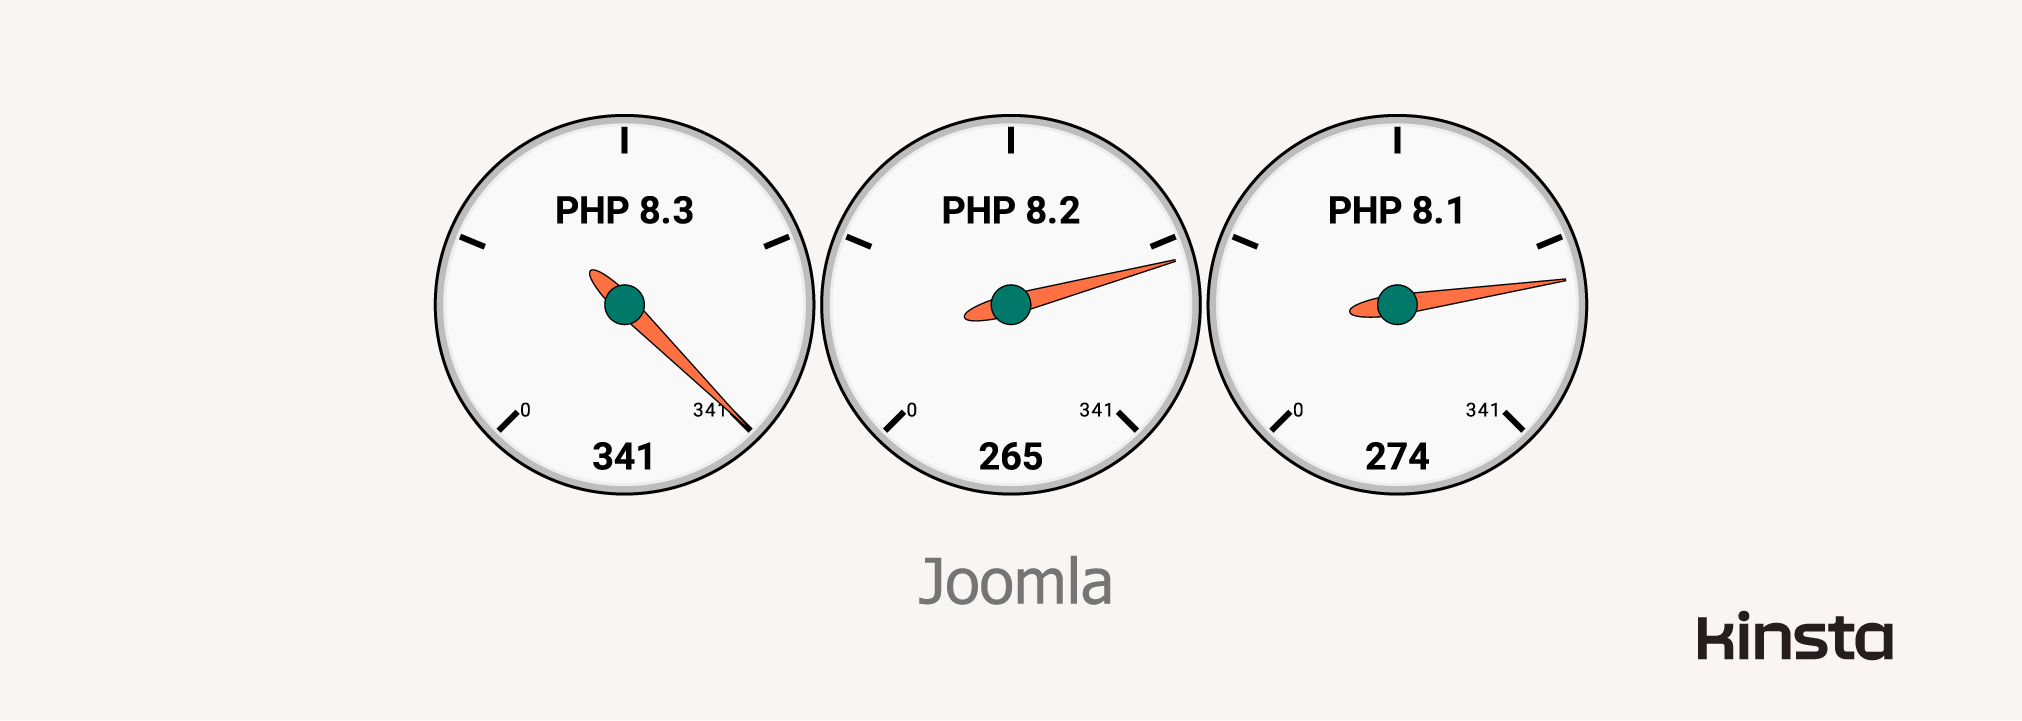 Leistung von Joomla 4.3.3 auf PHP 8.1, 8.2 und 8.3 (in Anfragen/Sekunde)